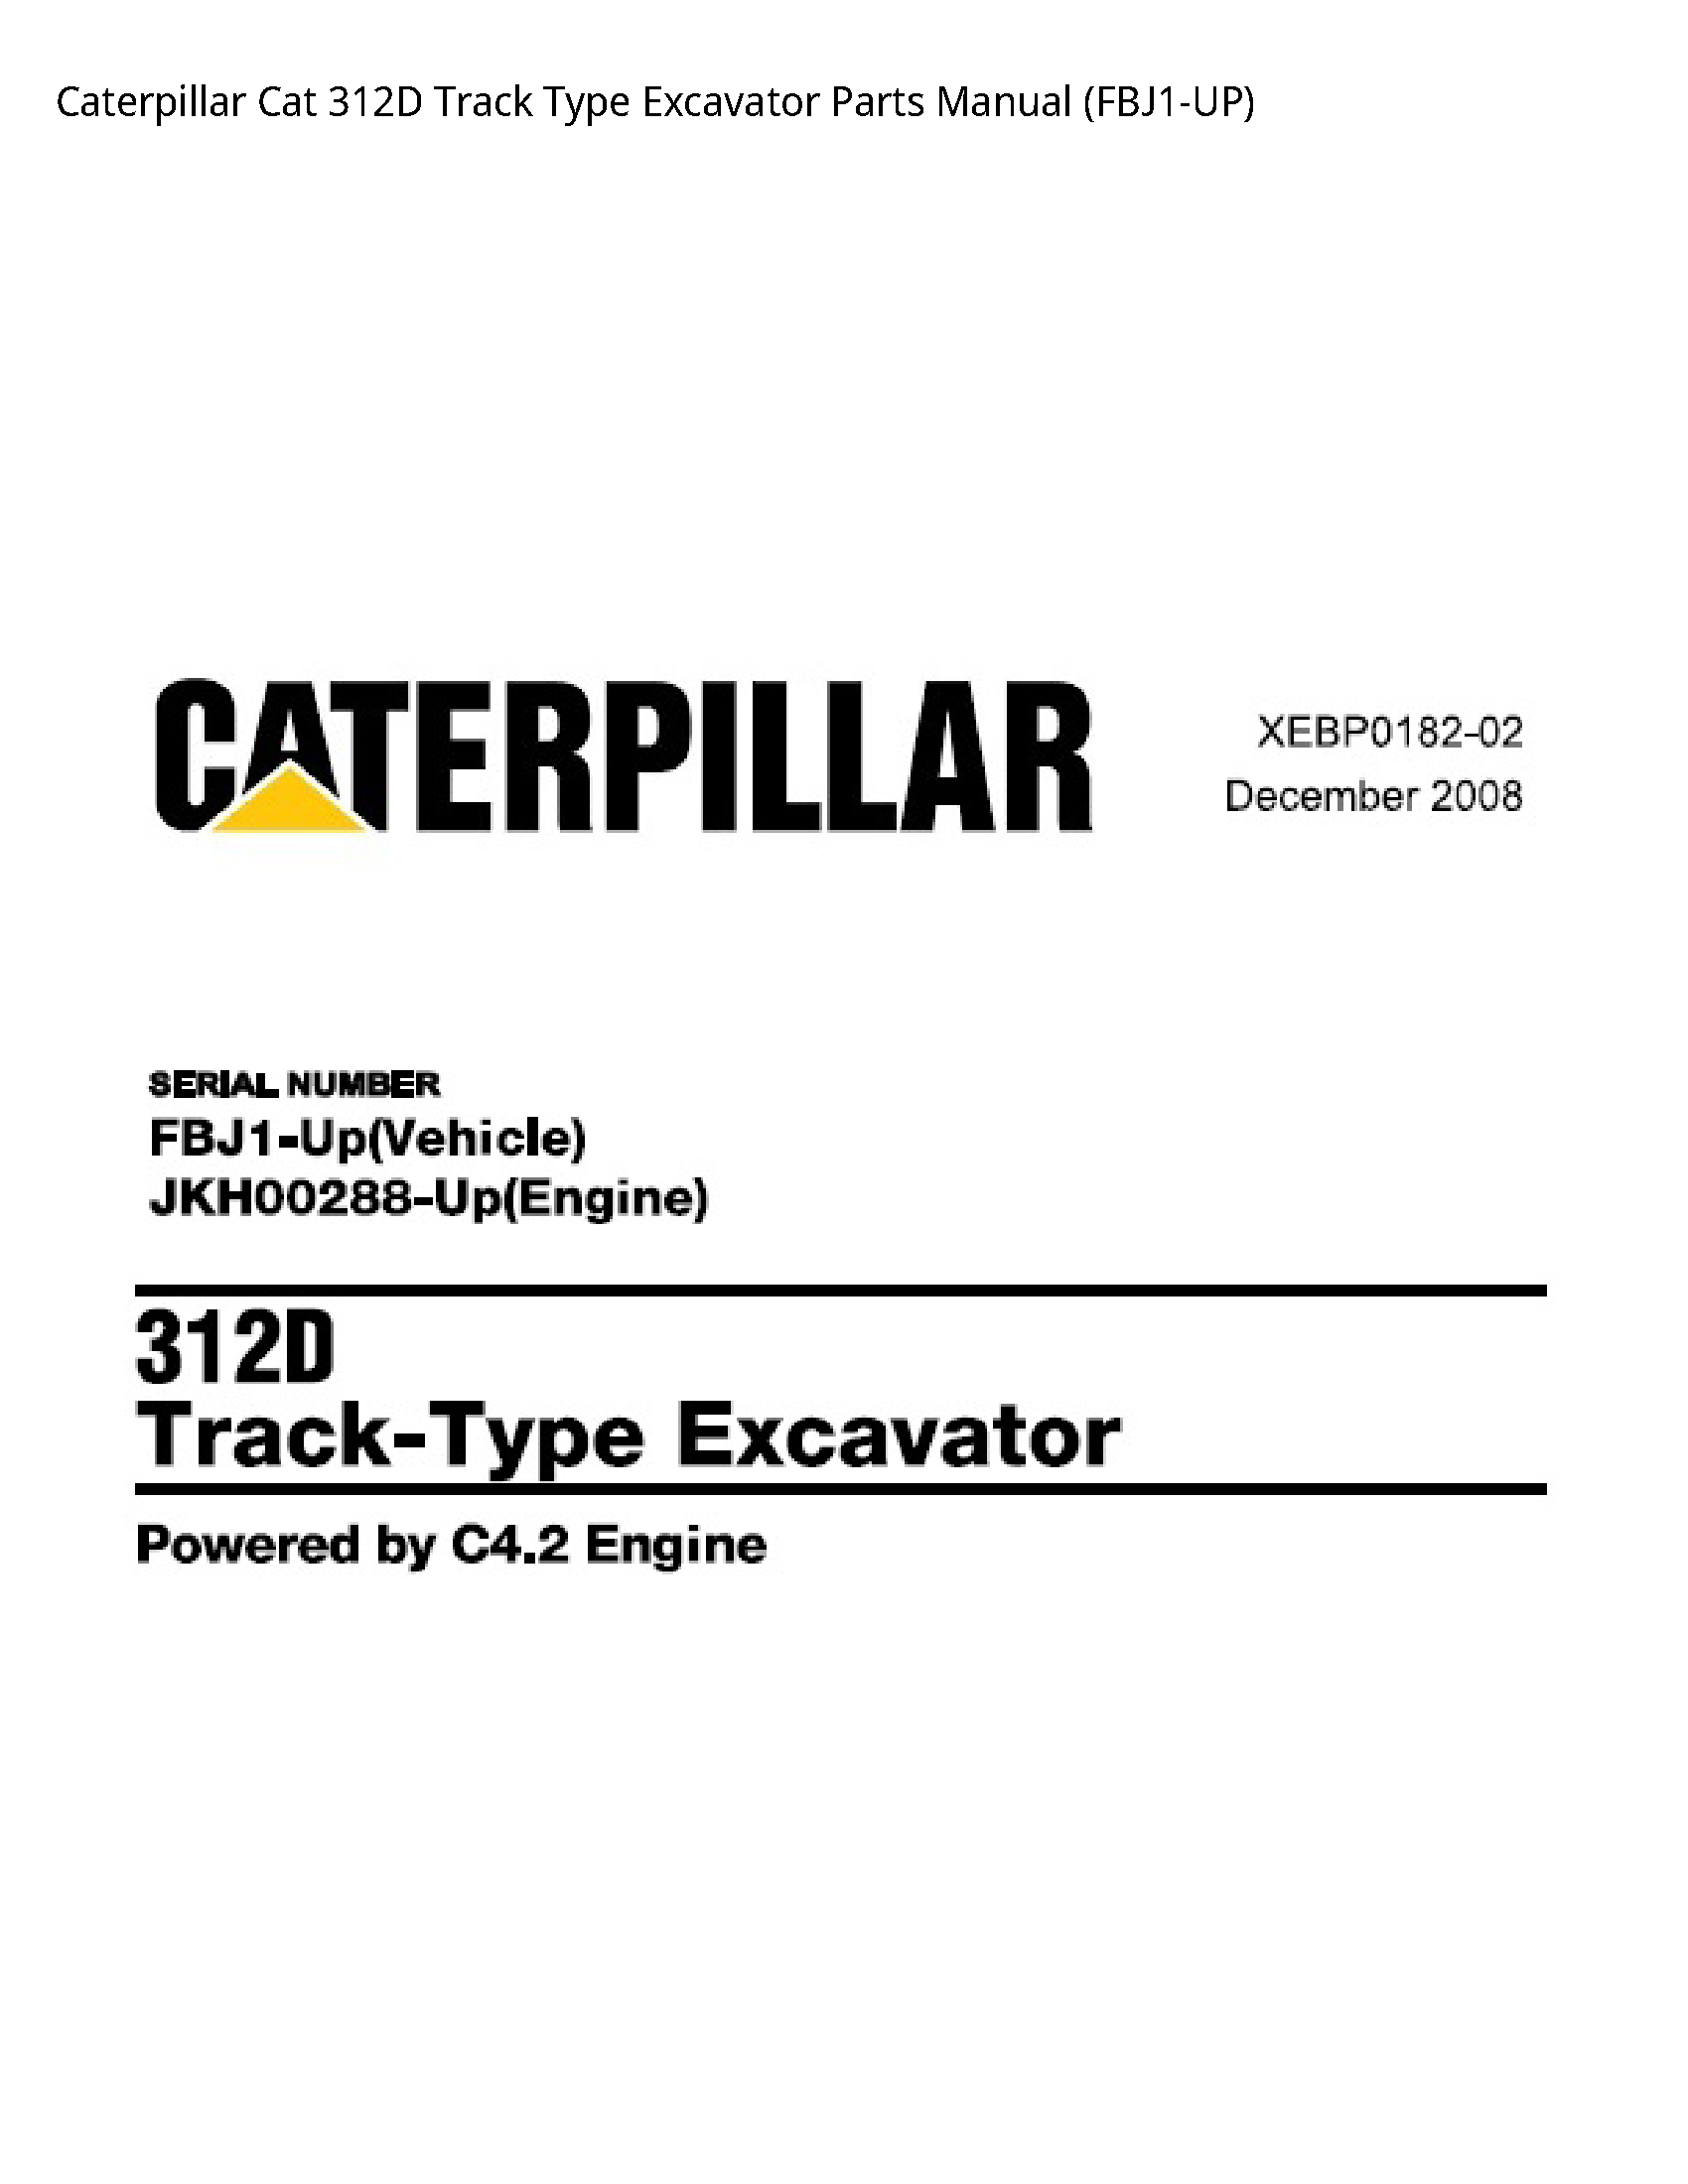 Caterpillar 312D Cat Track Type Excavator Parts manual